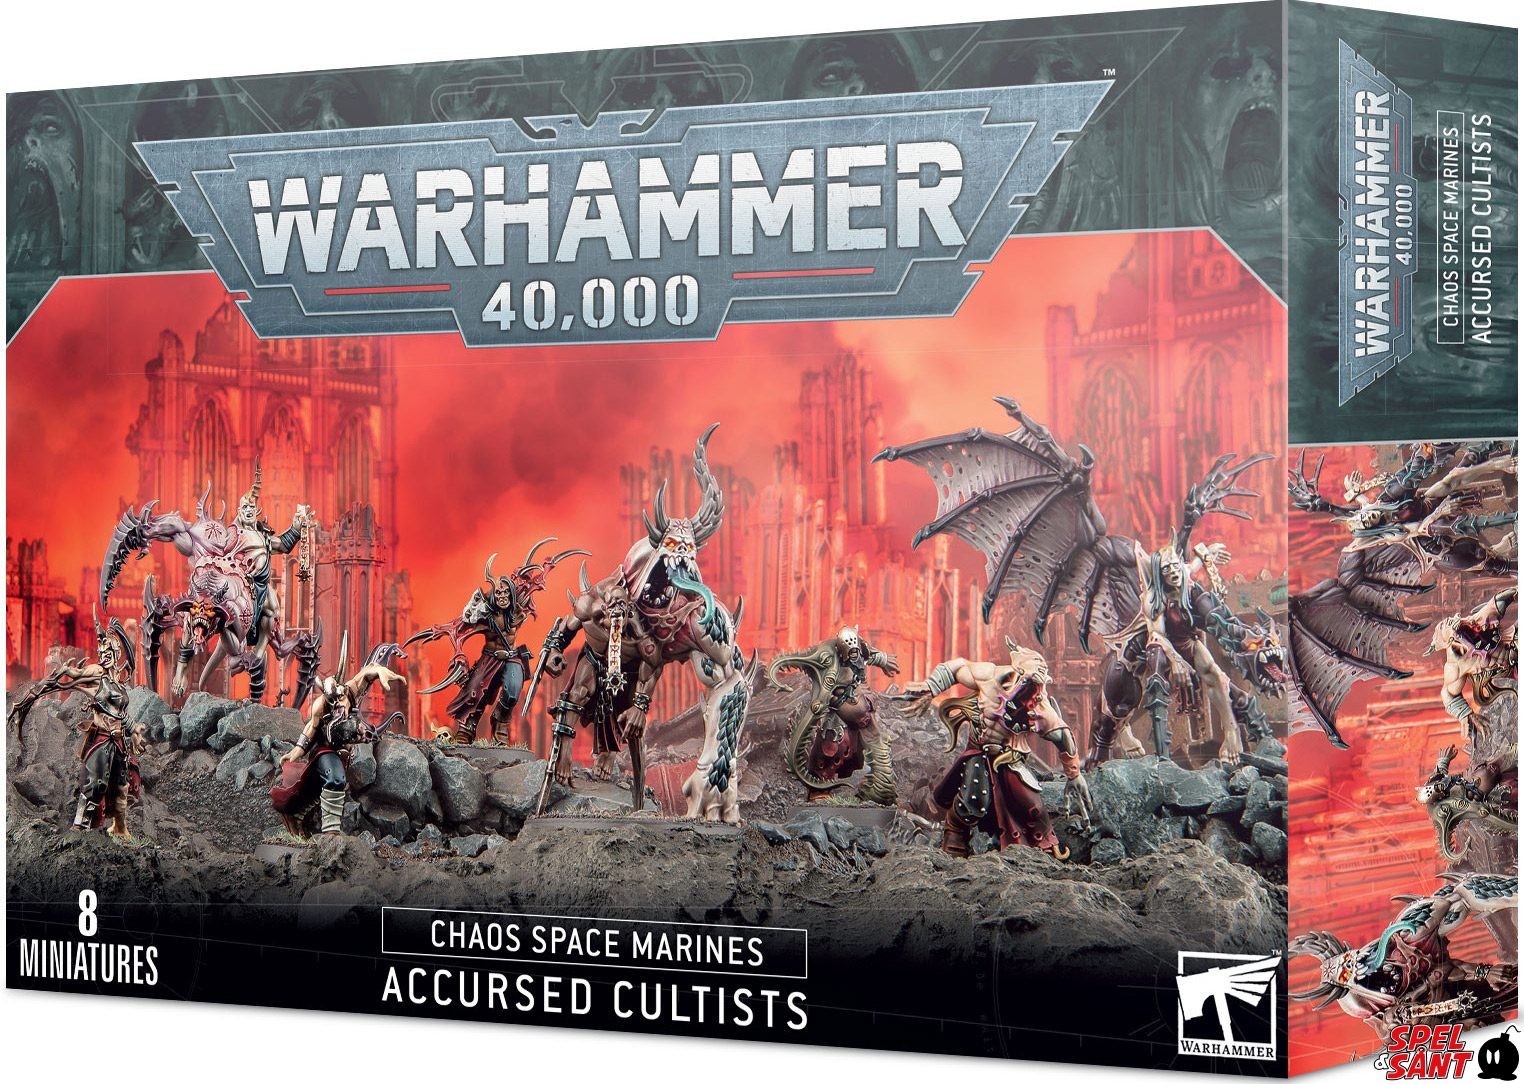 Coomer Cultist, - Snordix -  Chaos legion, Warhammer 40k, Warhammer